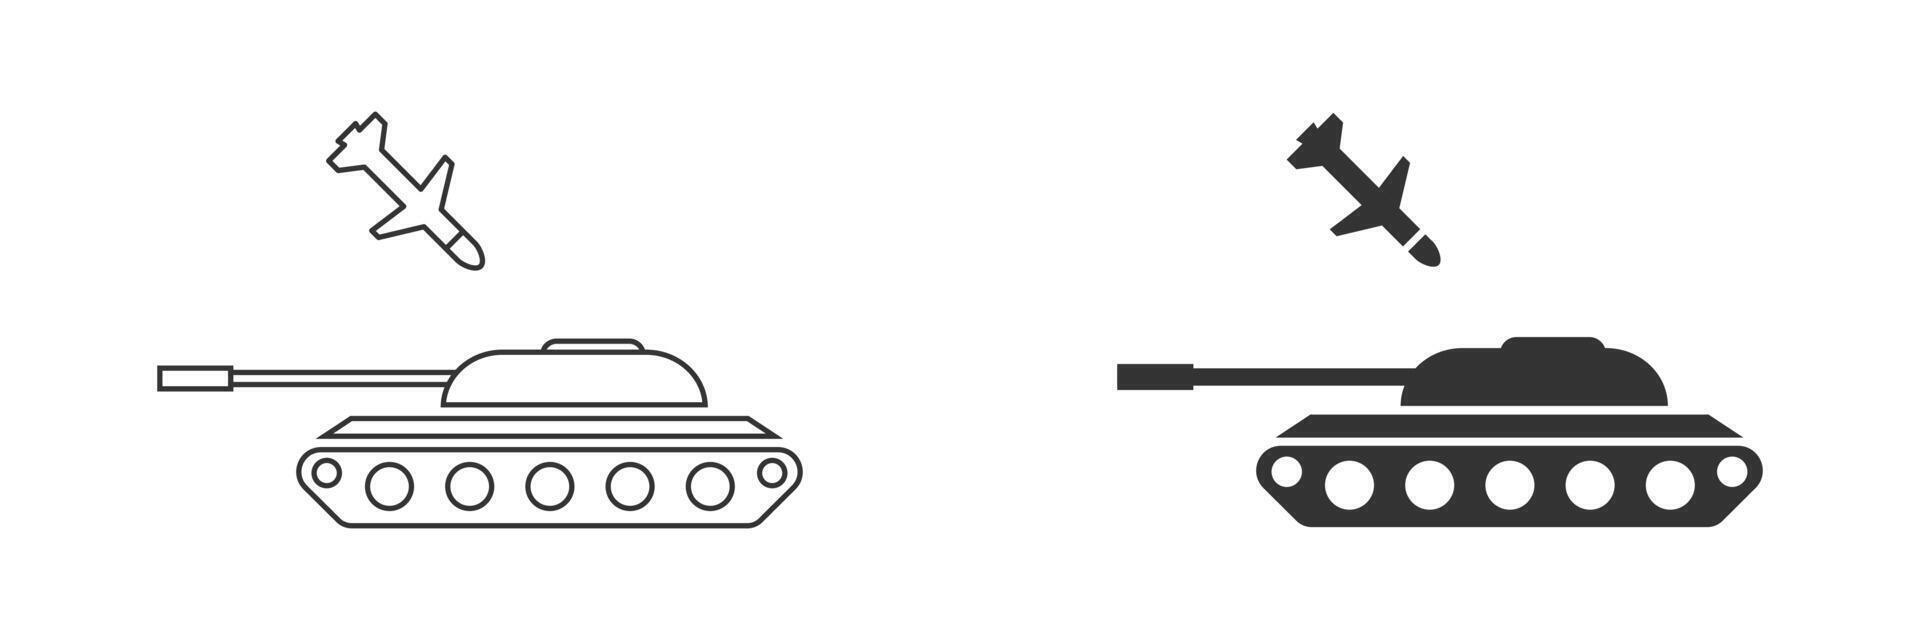 raket aanval tank icoon. anti tank raket. vector illustratie.